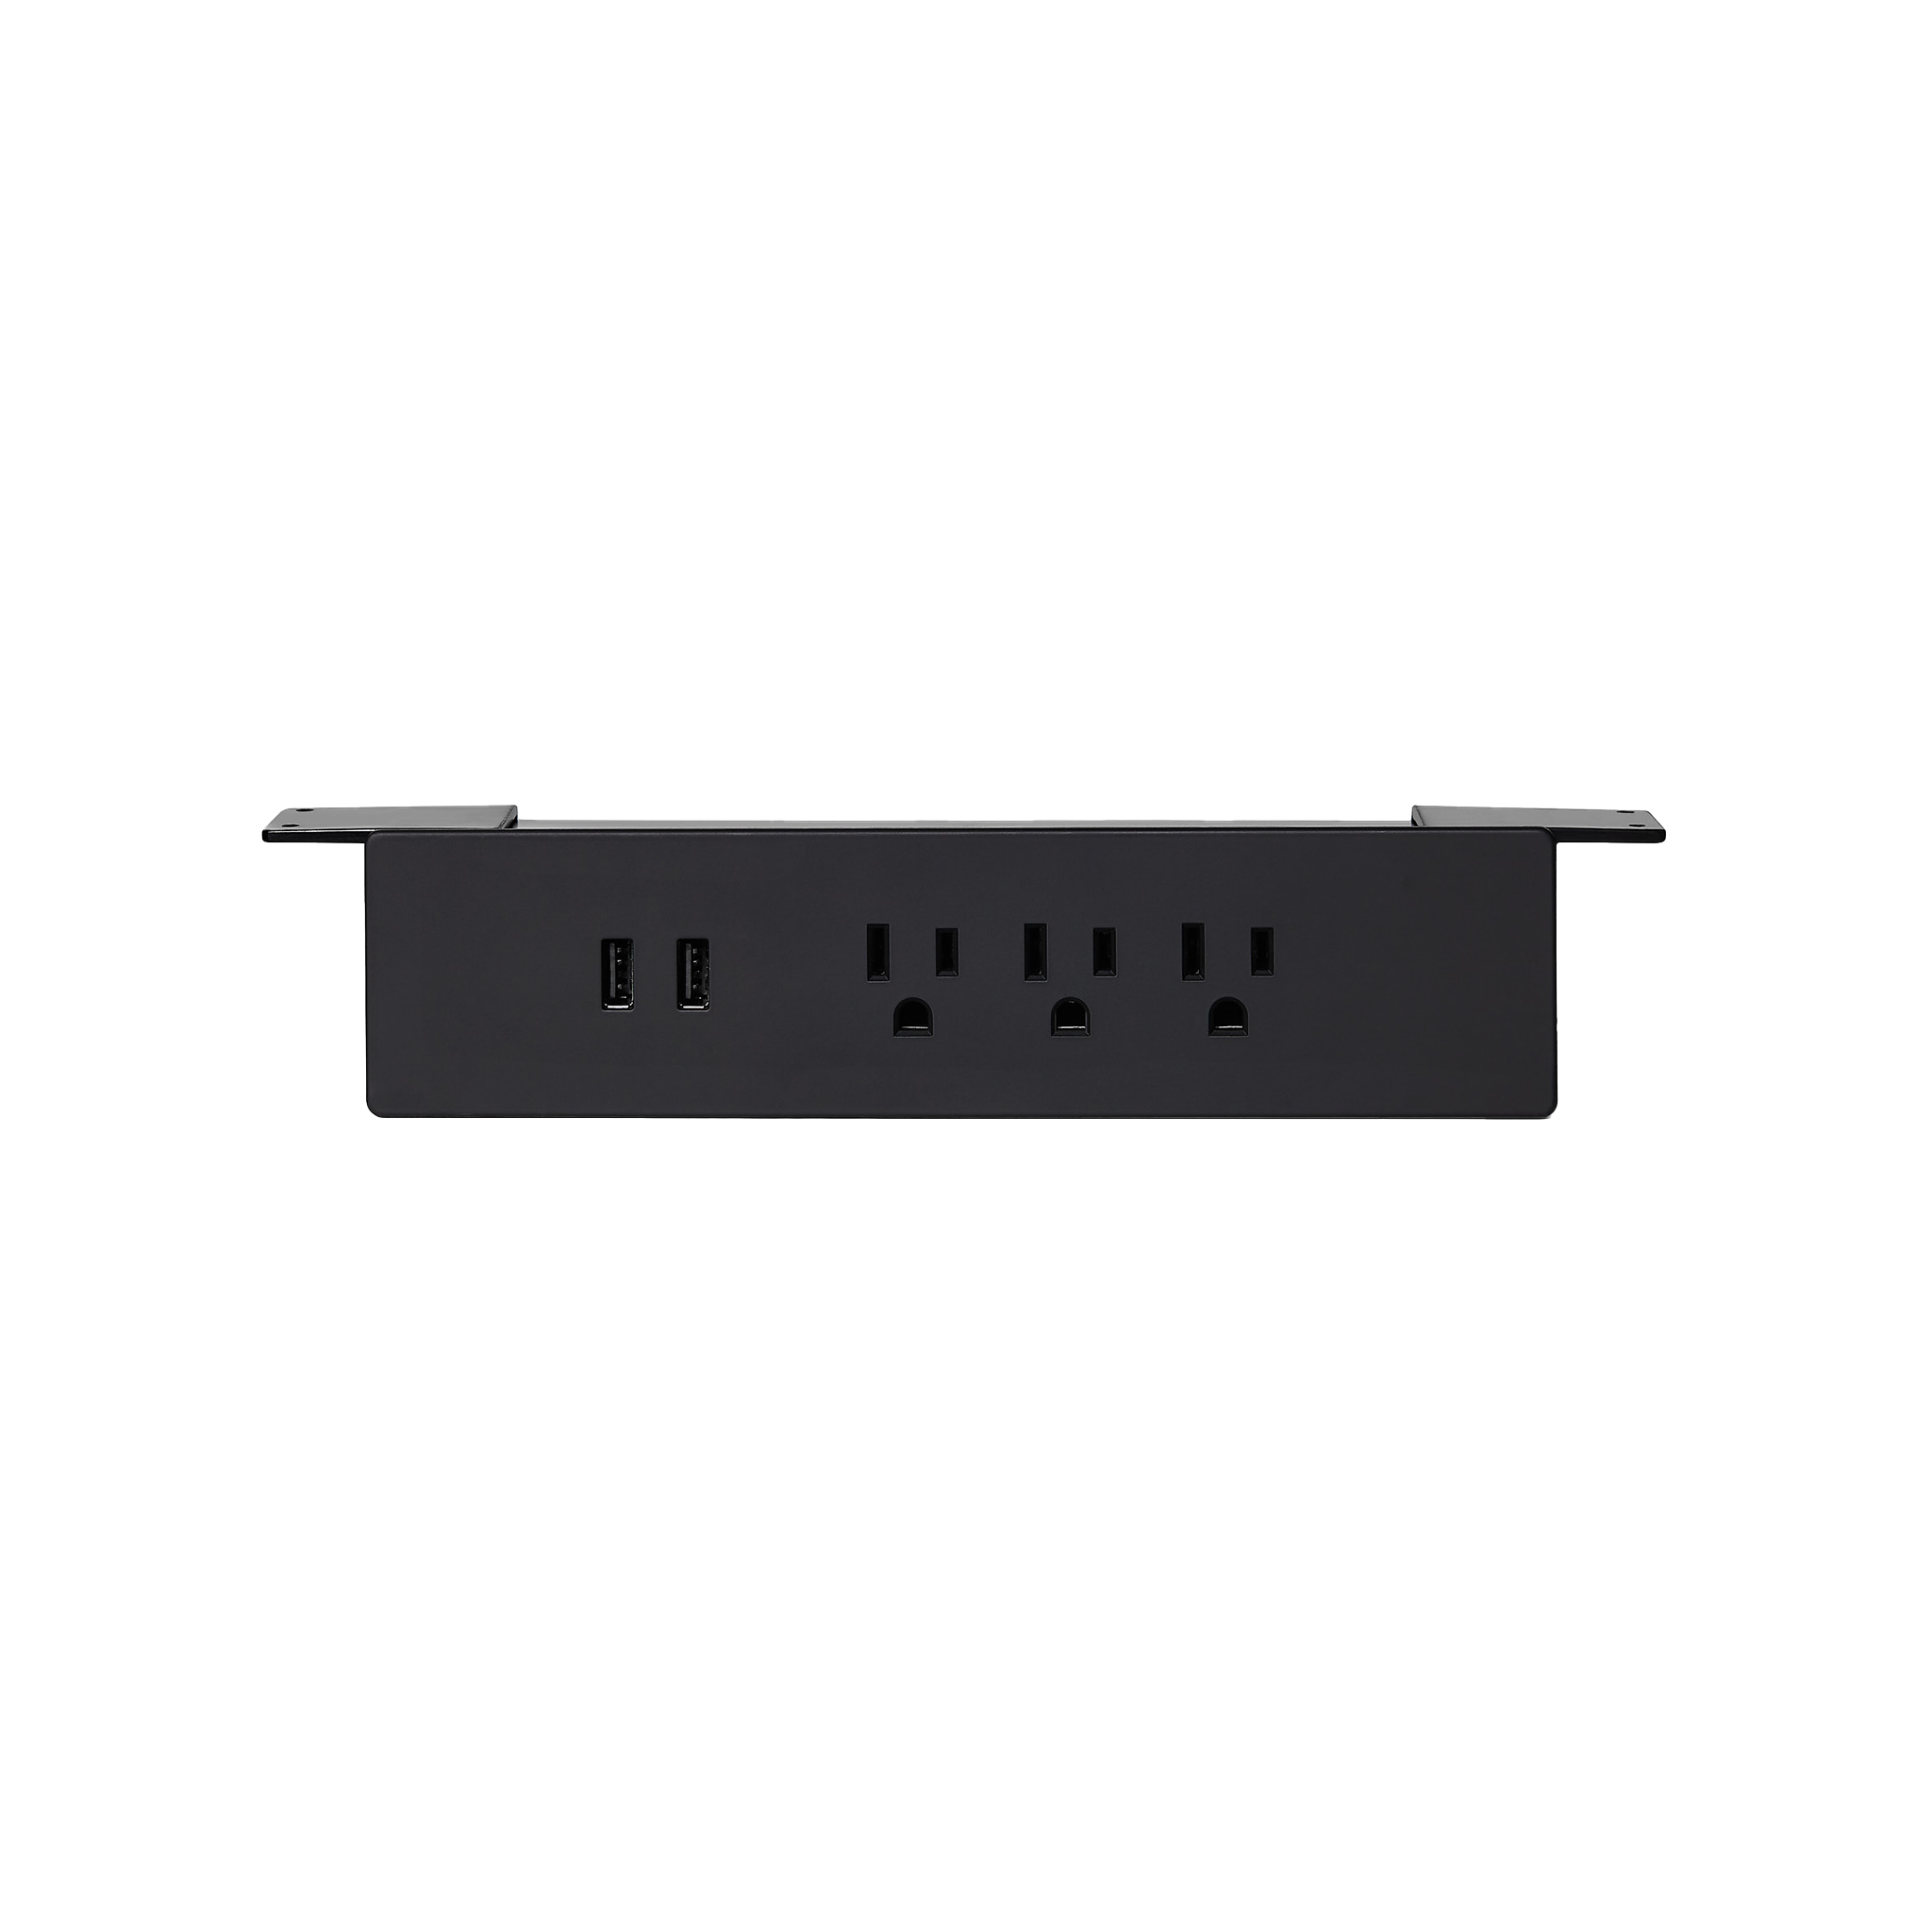 Almost Perfect Power bar outlet - Black-Under desk - Noire-Sous bureau